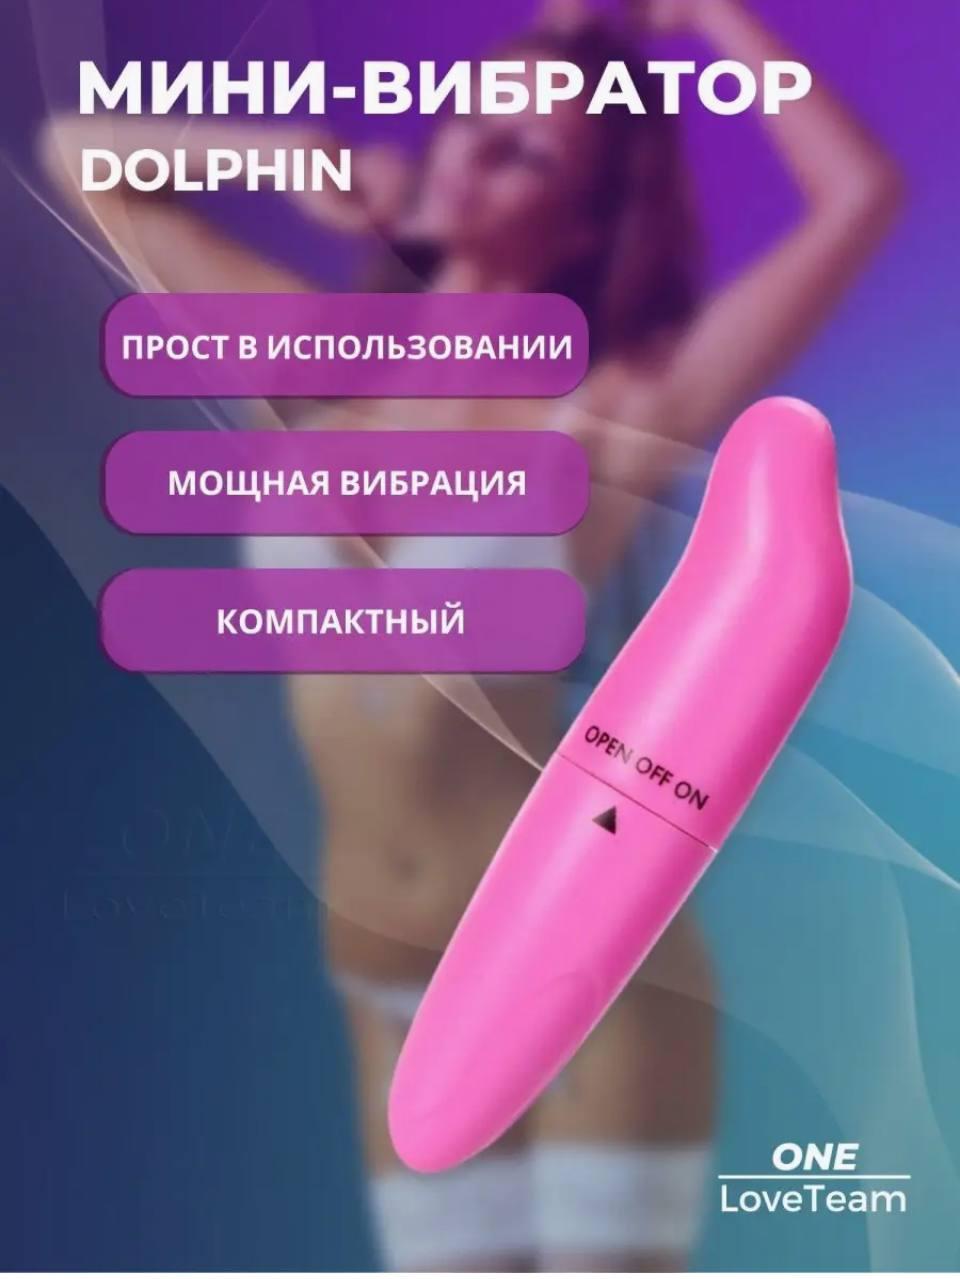 Вибратор дельфин, мини вибратор для точки джи